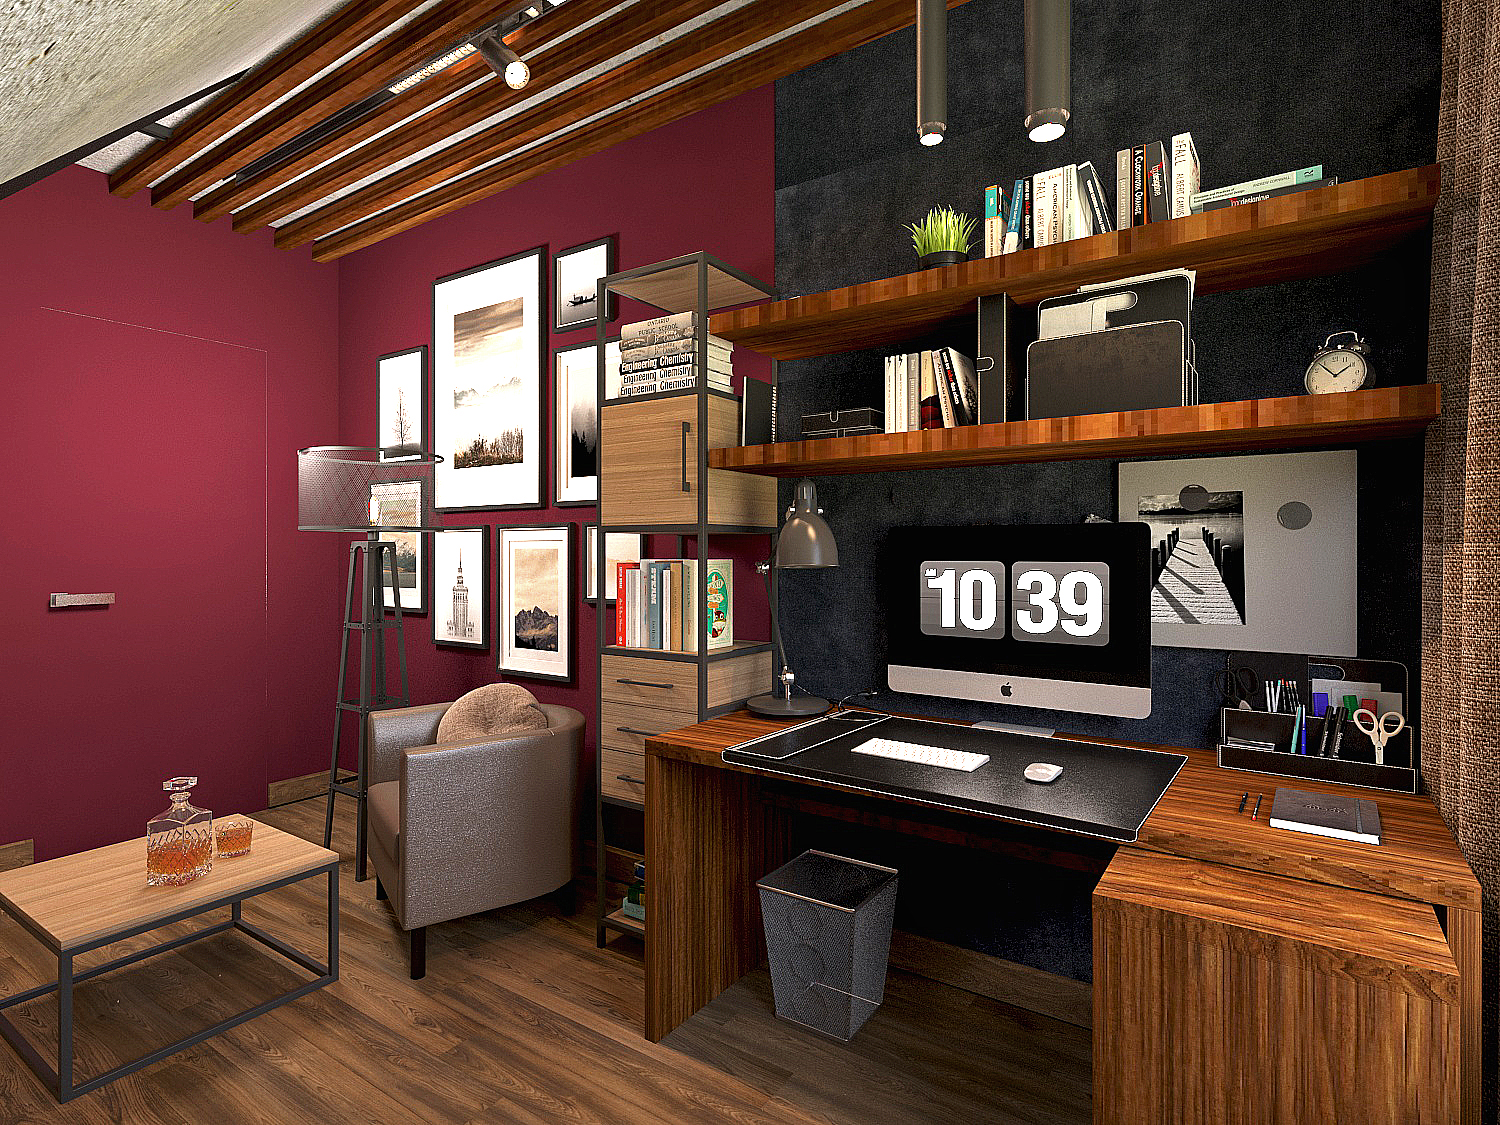 एक निजी घर में कमरा 3d max vray 3.0 में प्रस्तुत छवि